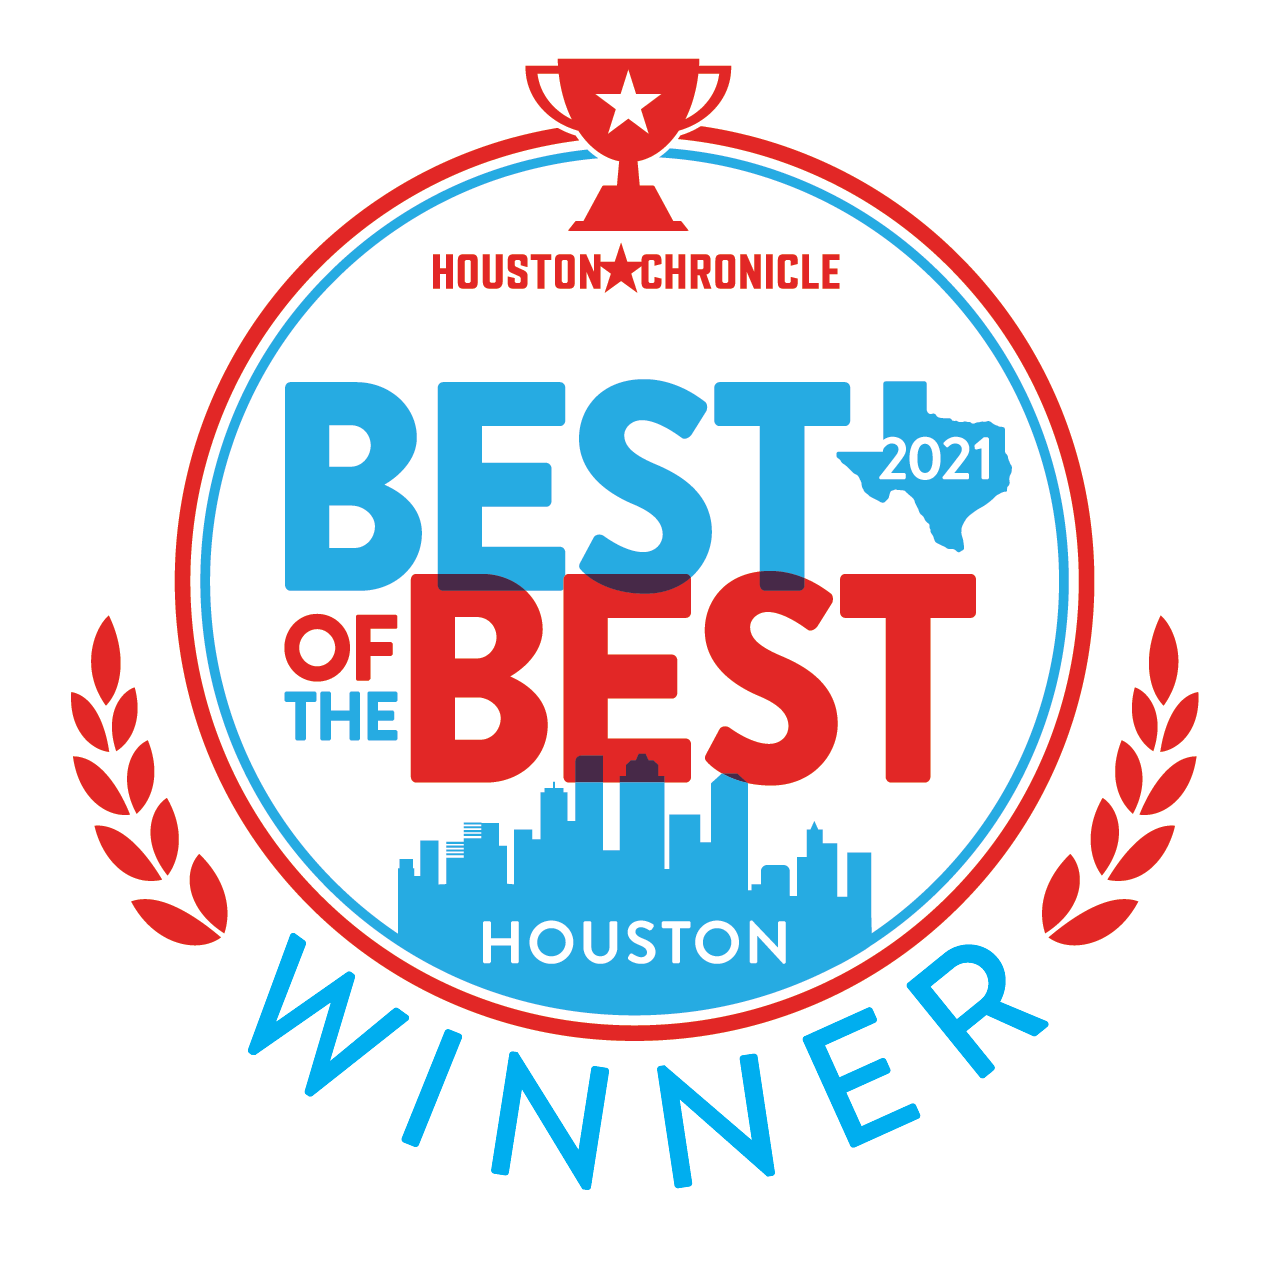 Best of the Best Houston, 2021 Award Winner